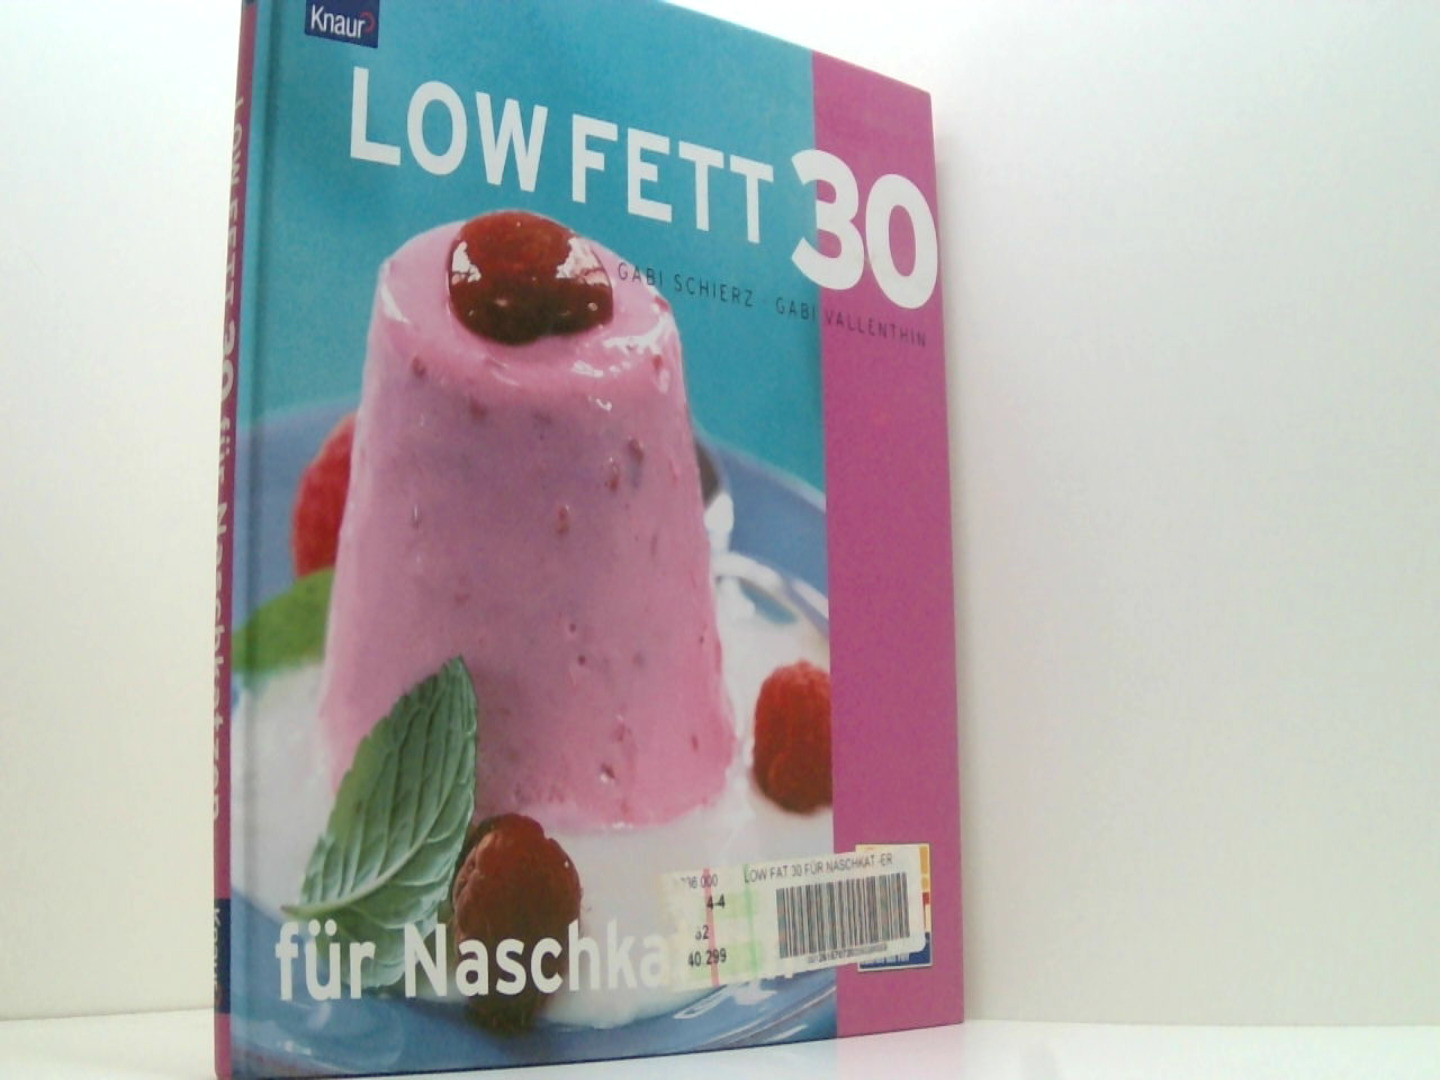 LOW FETT 30 für Naschkatzen - Schierz, Gabi und Gabi Vallenthin